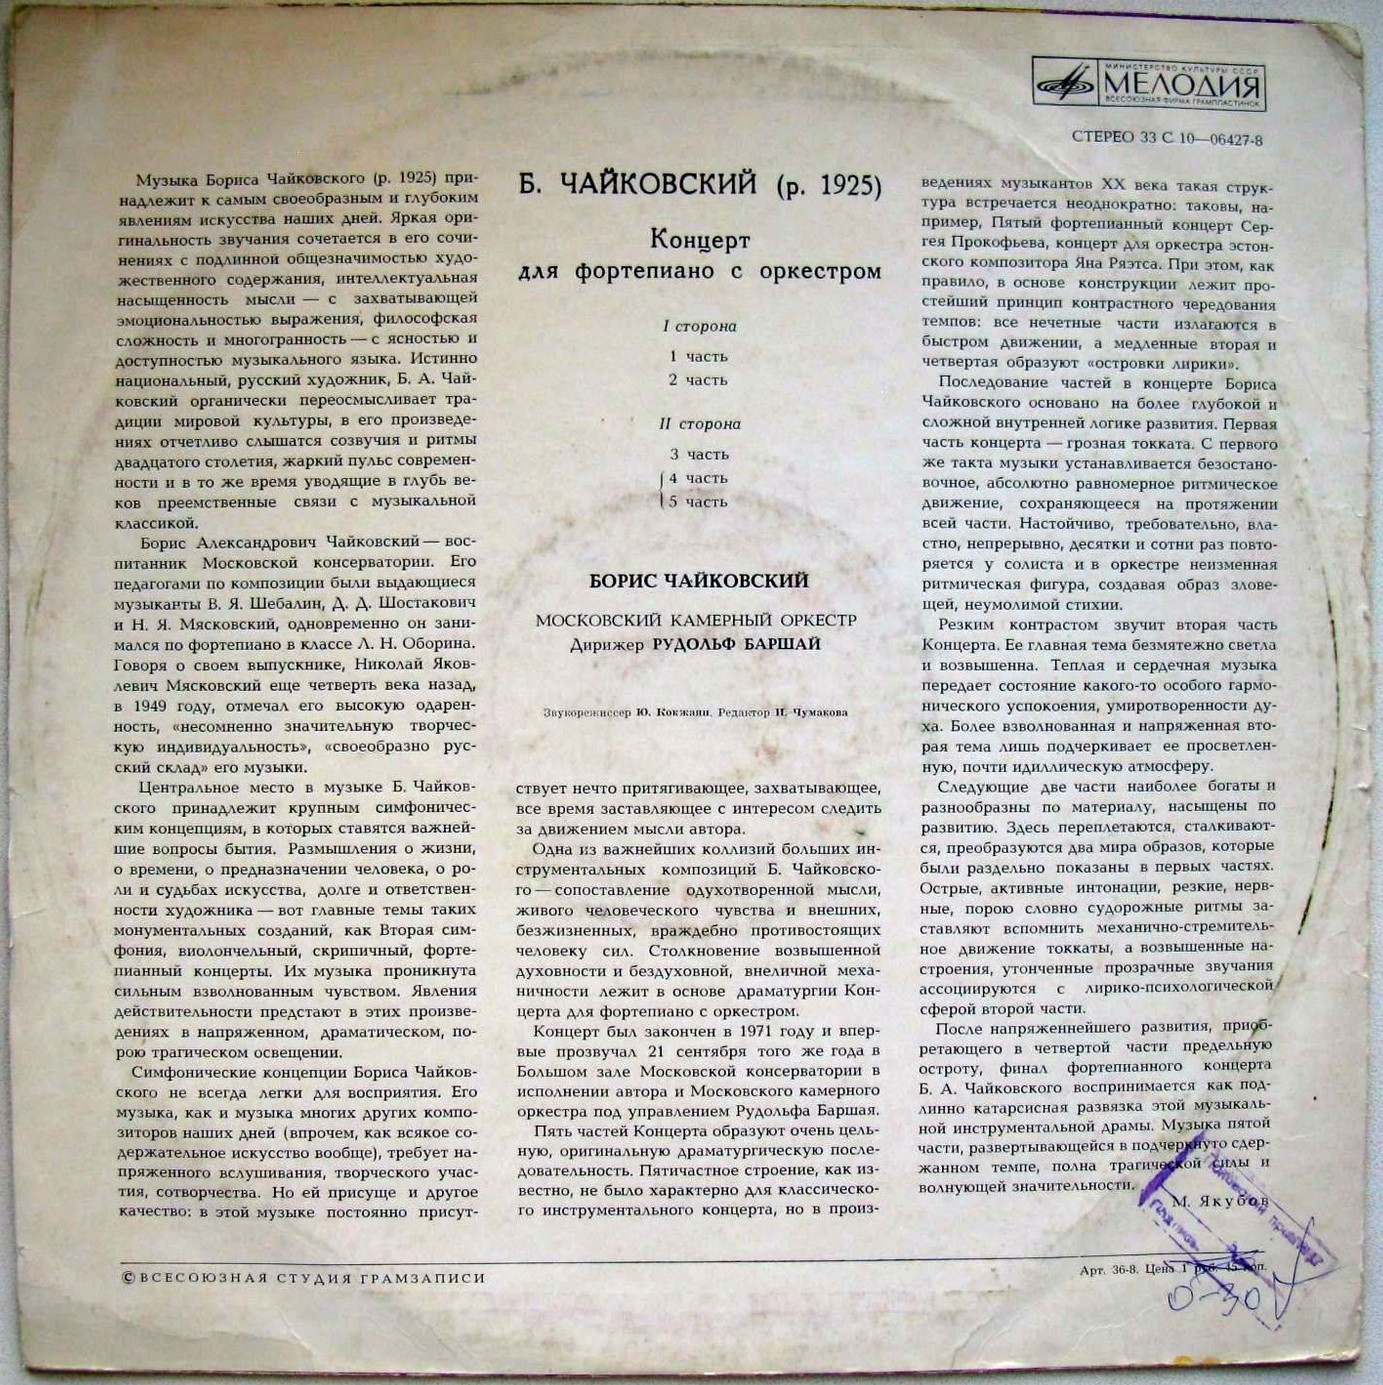 Б. ЧАЙКОВСКИЙ (1925): Концерт для ф-но с оркестром (Б. Чайковский, МКО, Р. Баршай)